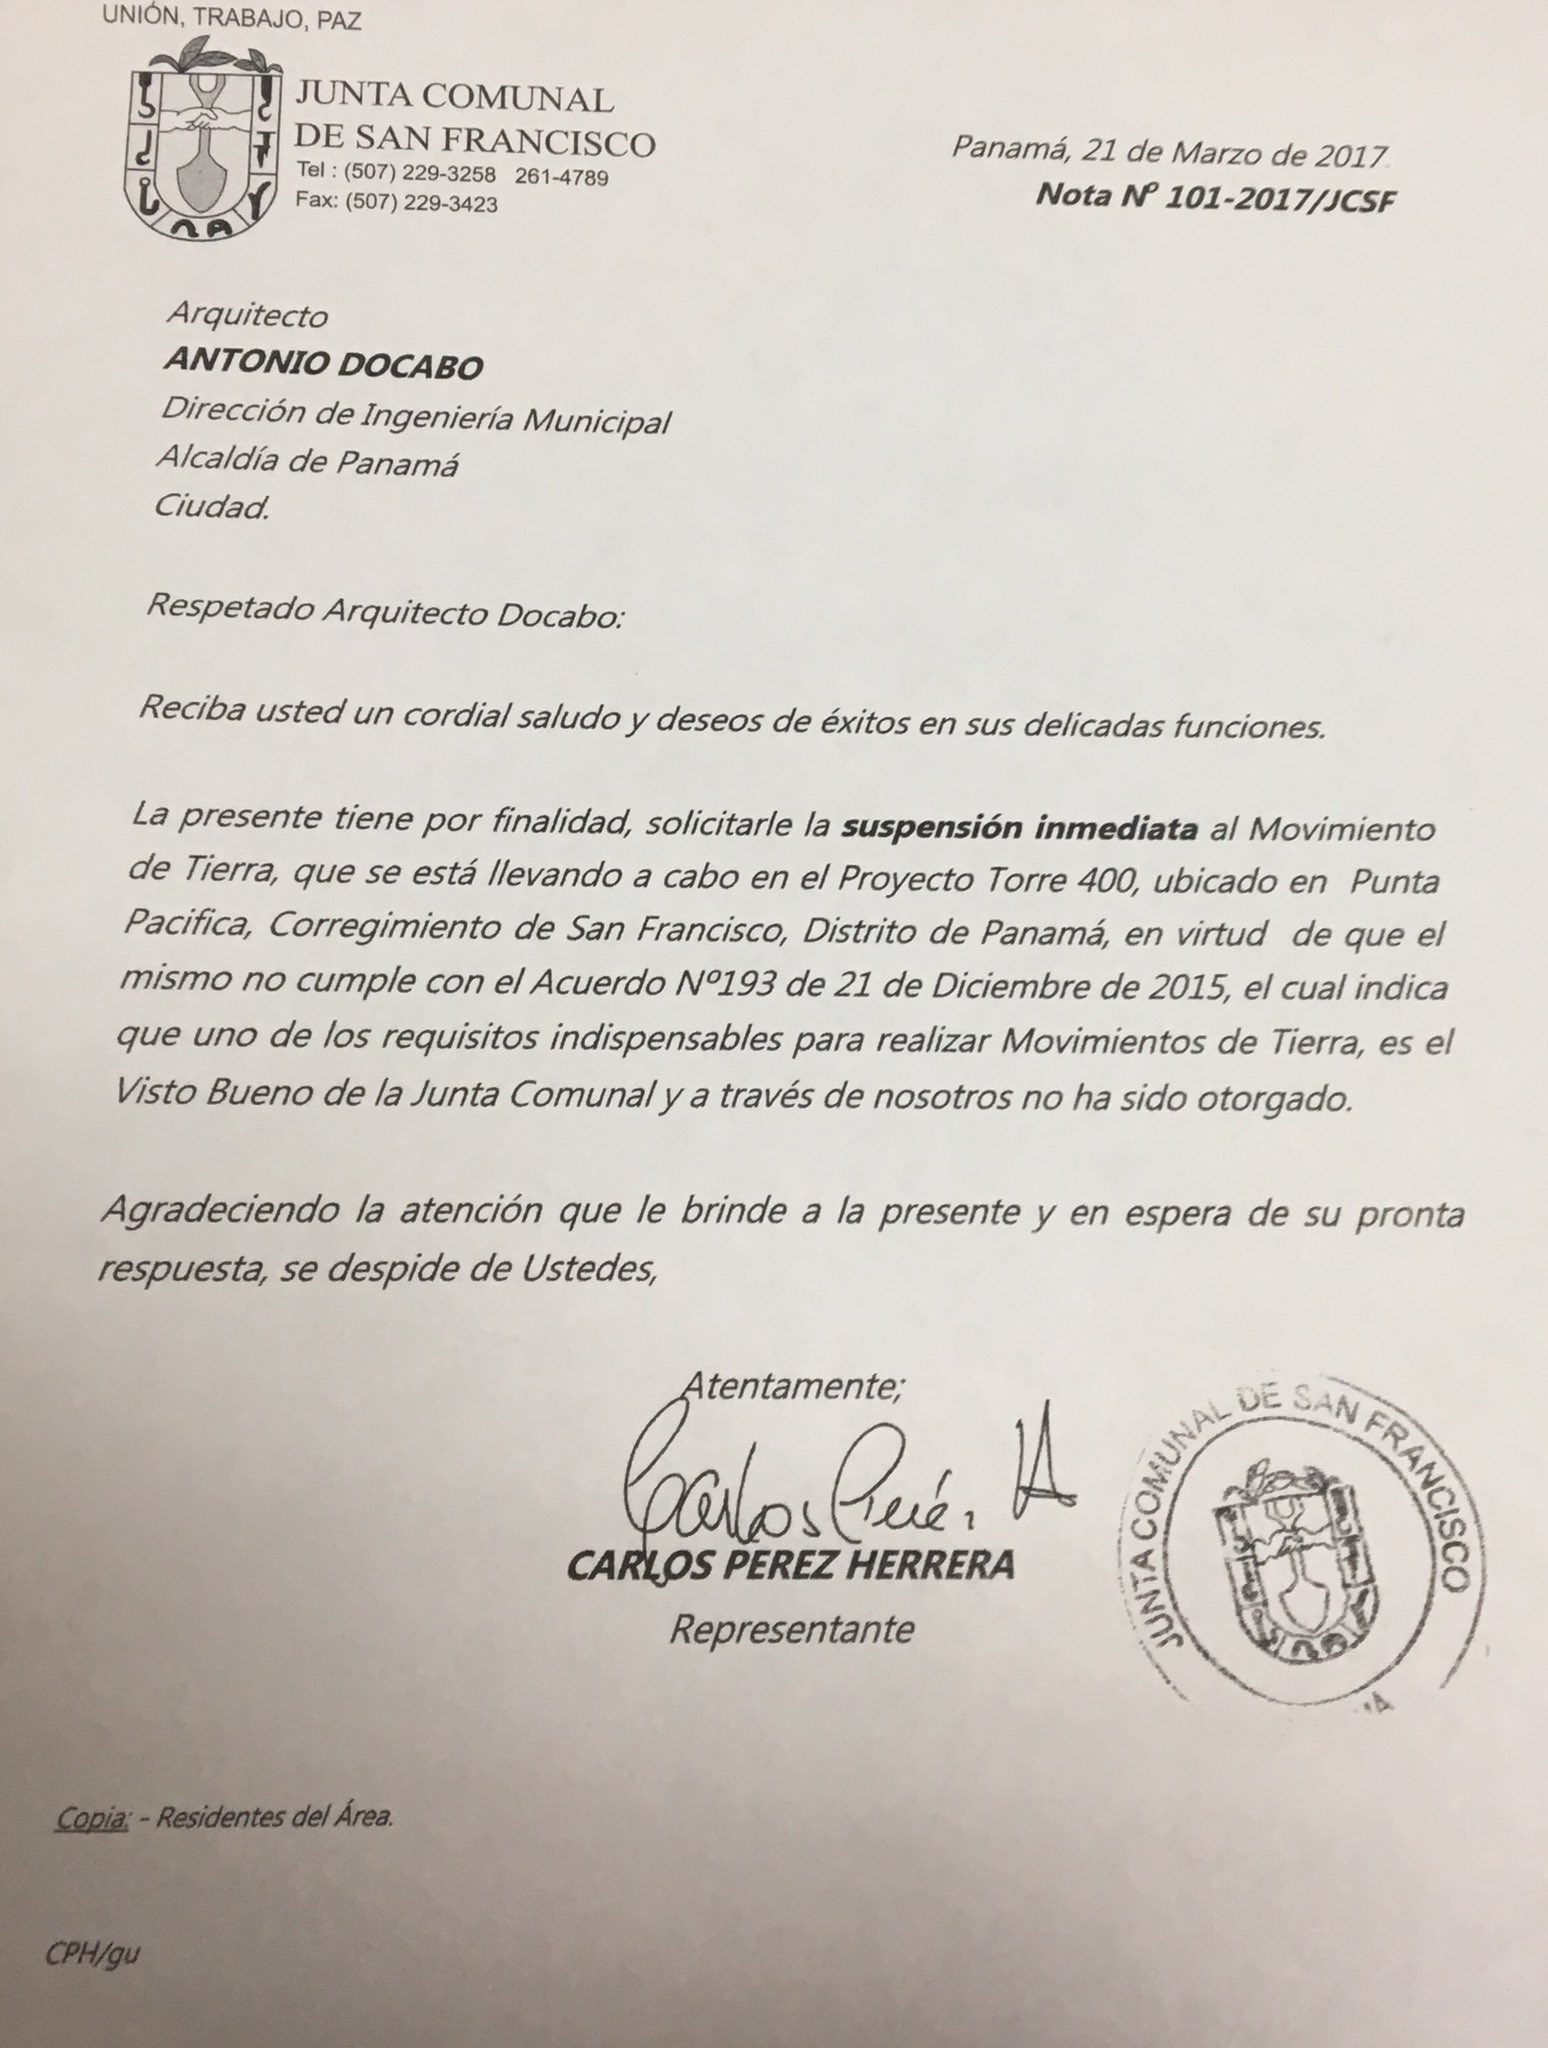 H.R. de SF, Carlos Pérez Herrera exigió a la DOYC fiscalizar y detener movimentos de tierras por falta de permisos de su despacho